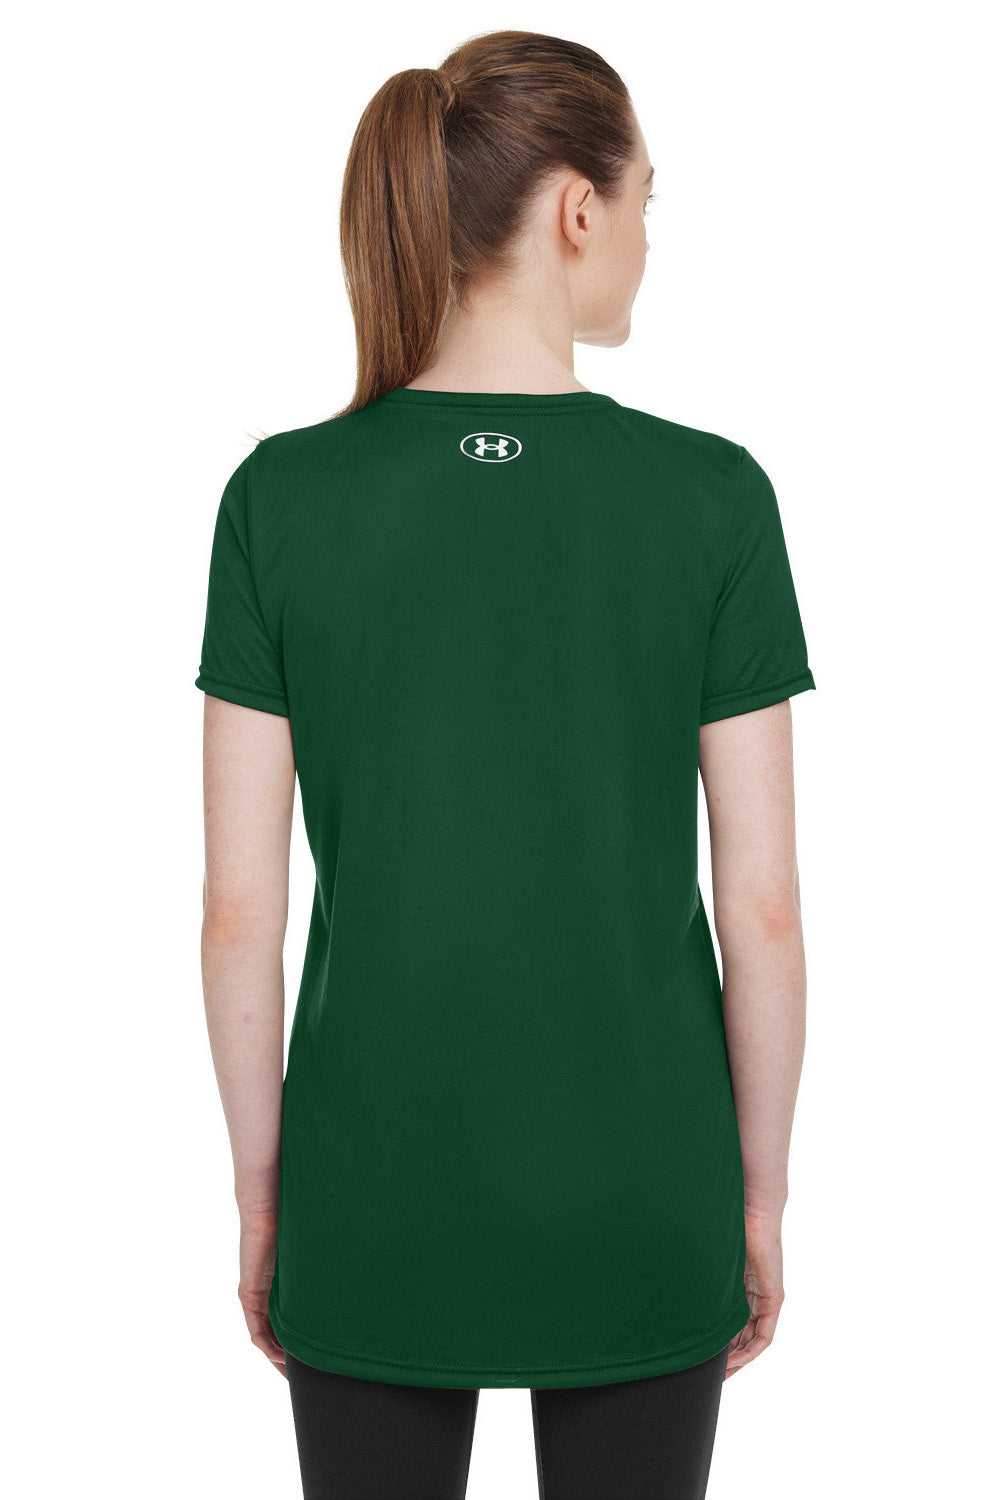 Under Armour 1376847 Womens Team Tech Moisture Wicking Short Sleeve Crewneck T-Shirt Forest Green Model Back